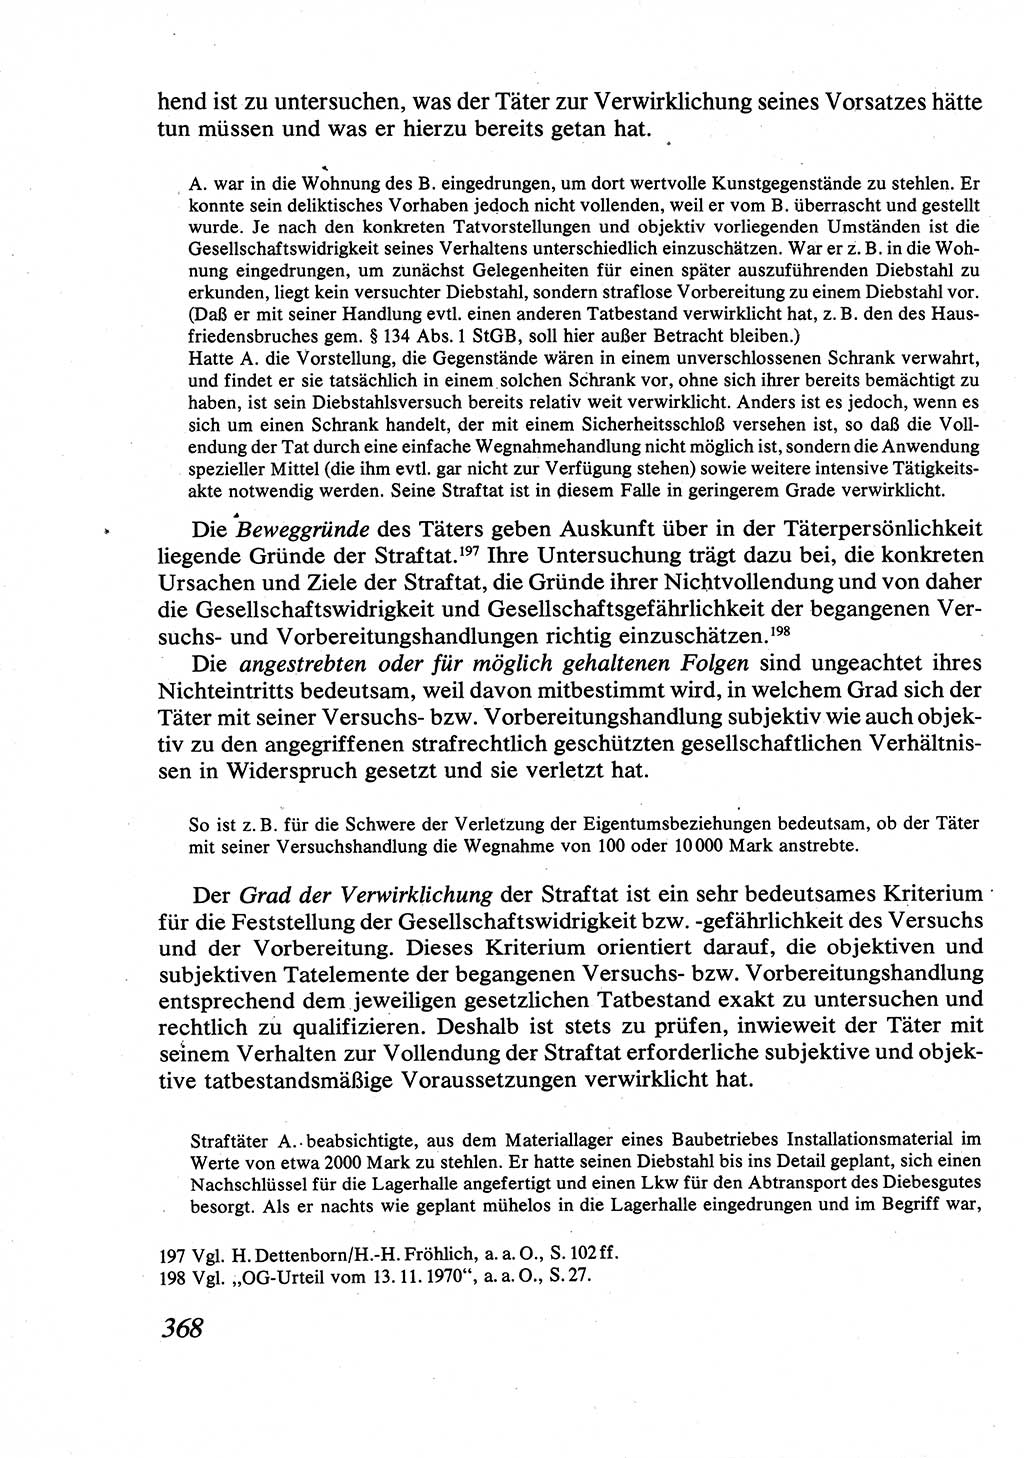 Strafrecht [Deutsche Demokratische Republik (DDR)], Allgemeiner Teil, Lehrbuch 1976, Seite 368 (Strafr. DDR AT Lb. 1976, S. 368)